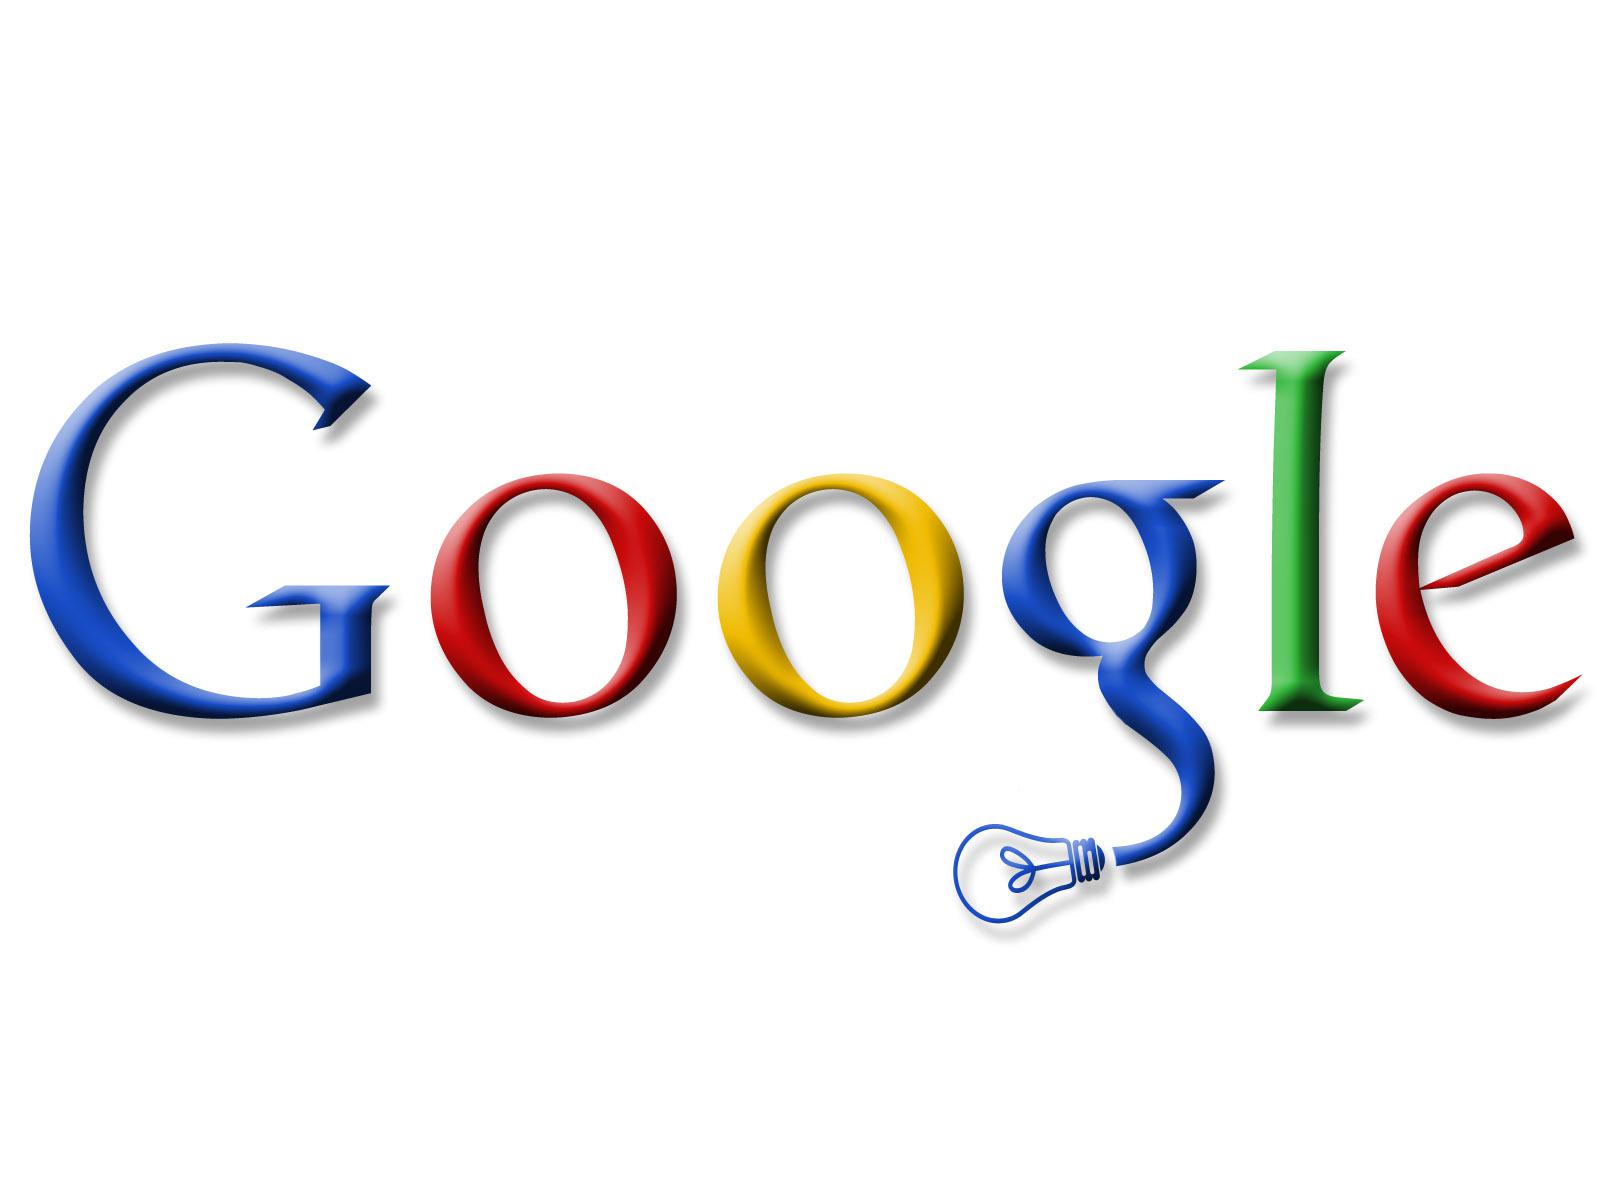 Google Instant lance la recherche instantanée!